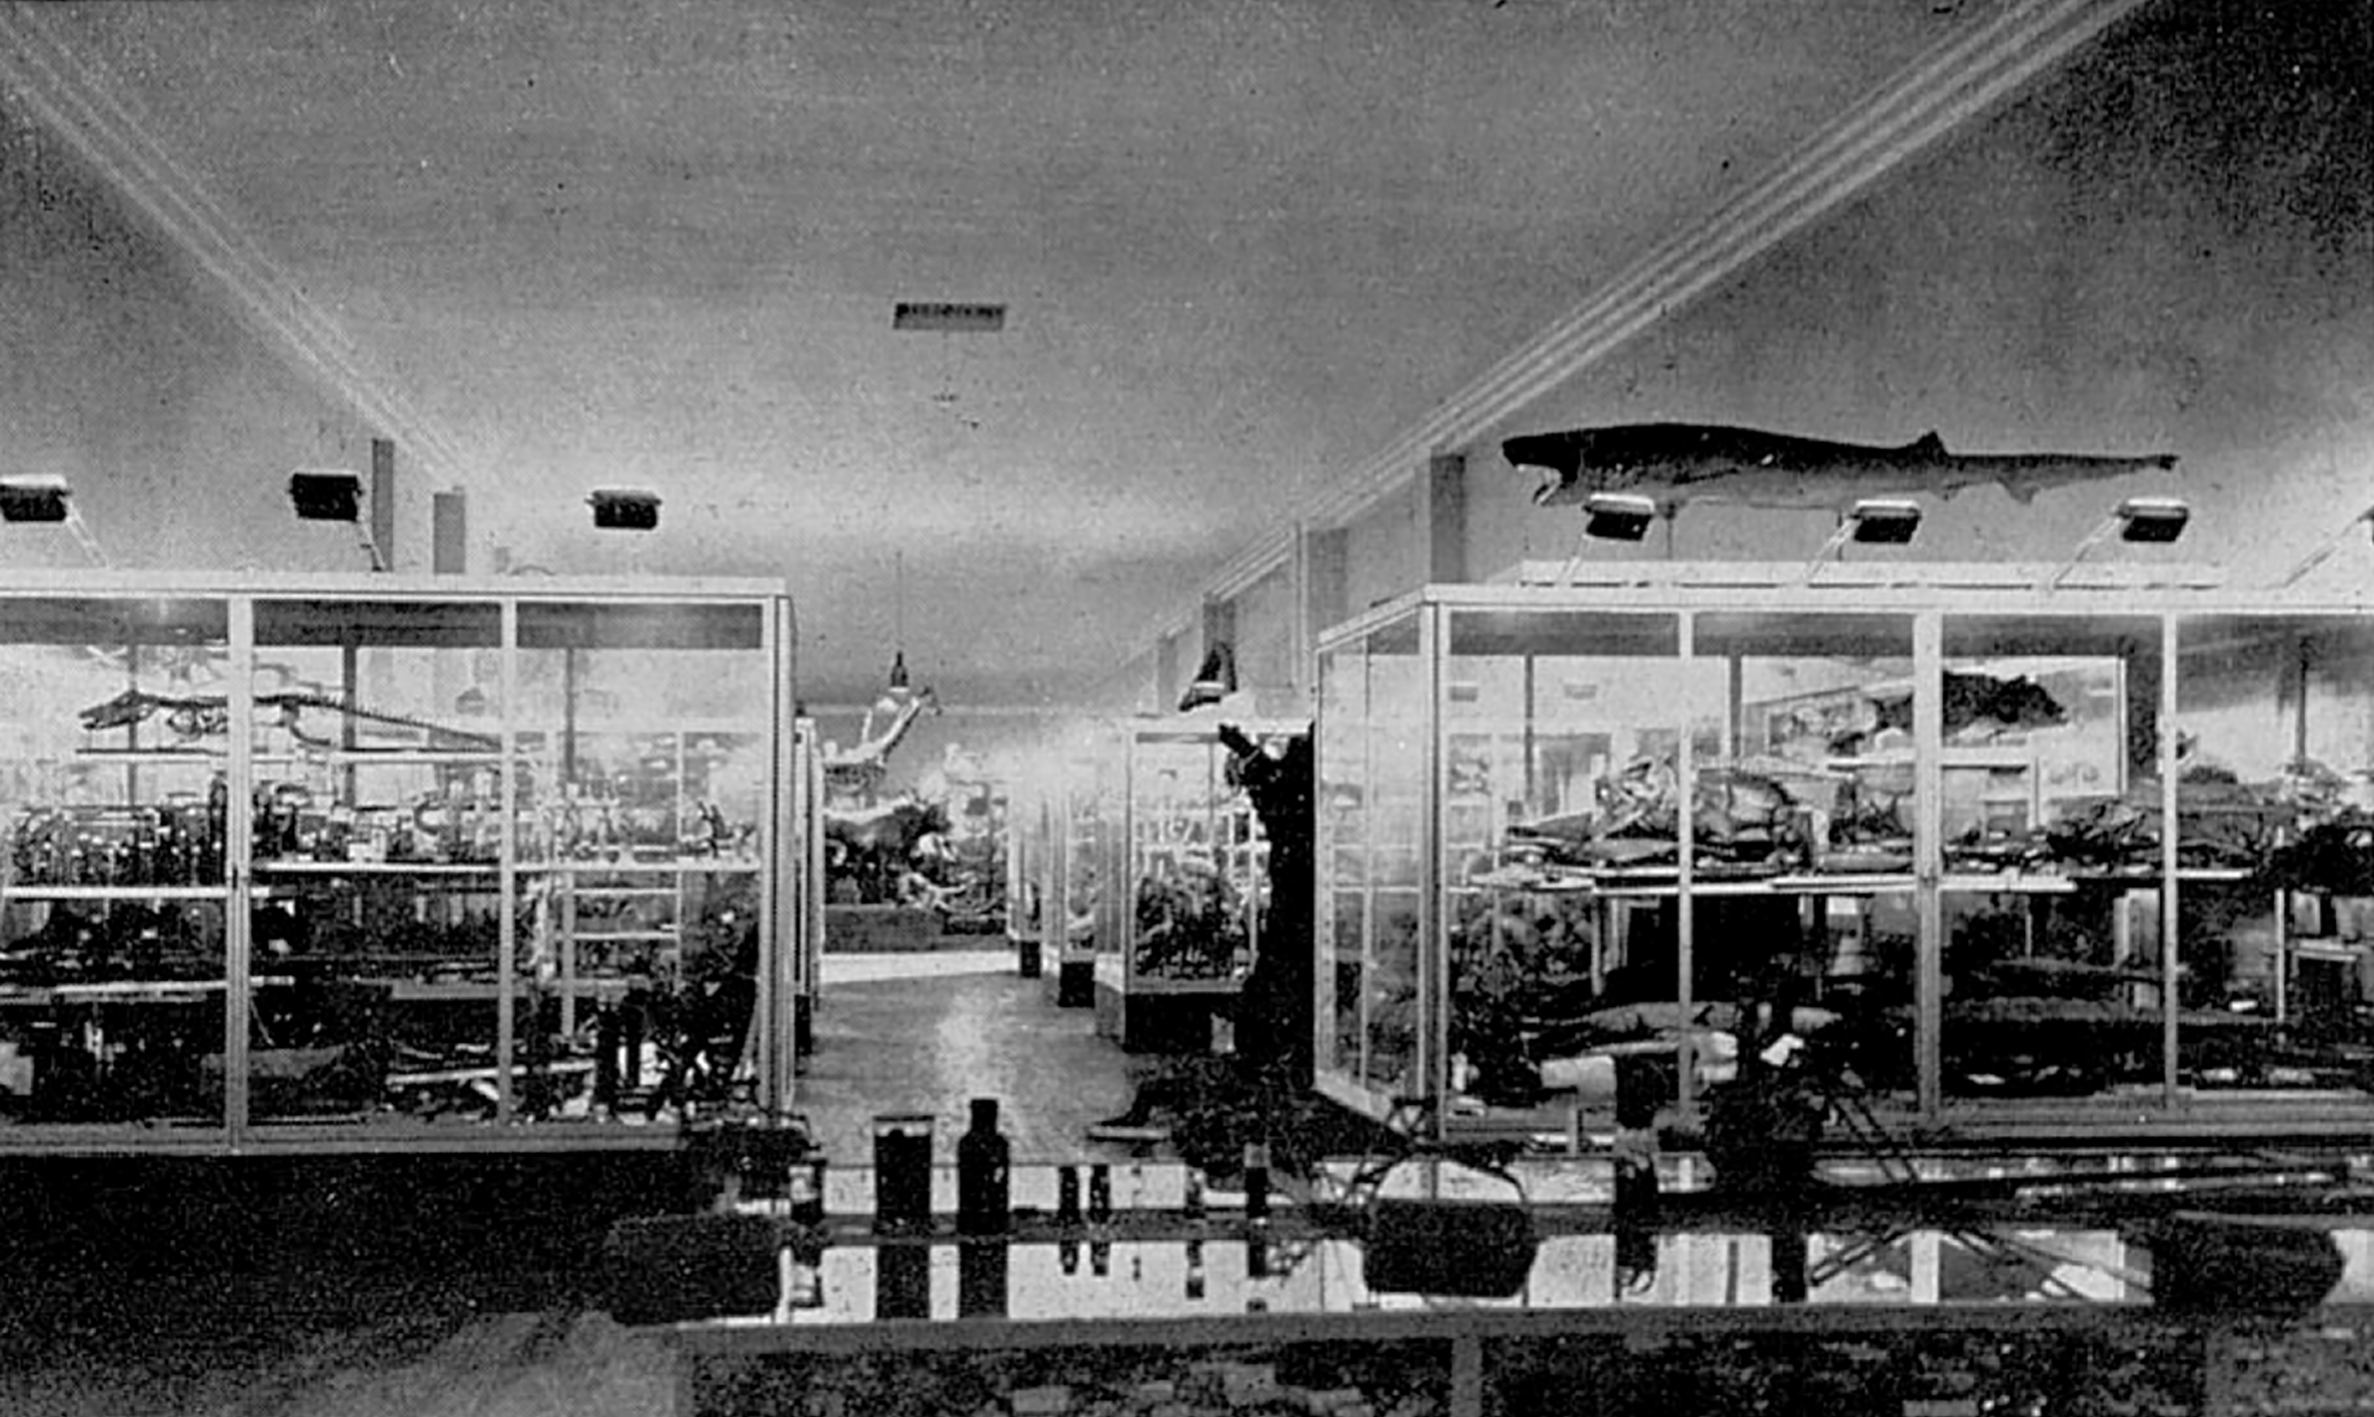 Display window, bent sheet steel and glass, 1933. Provenance: Musée de Zoologie, Nancy.